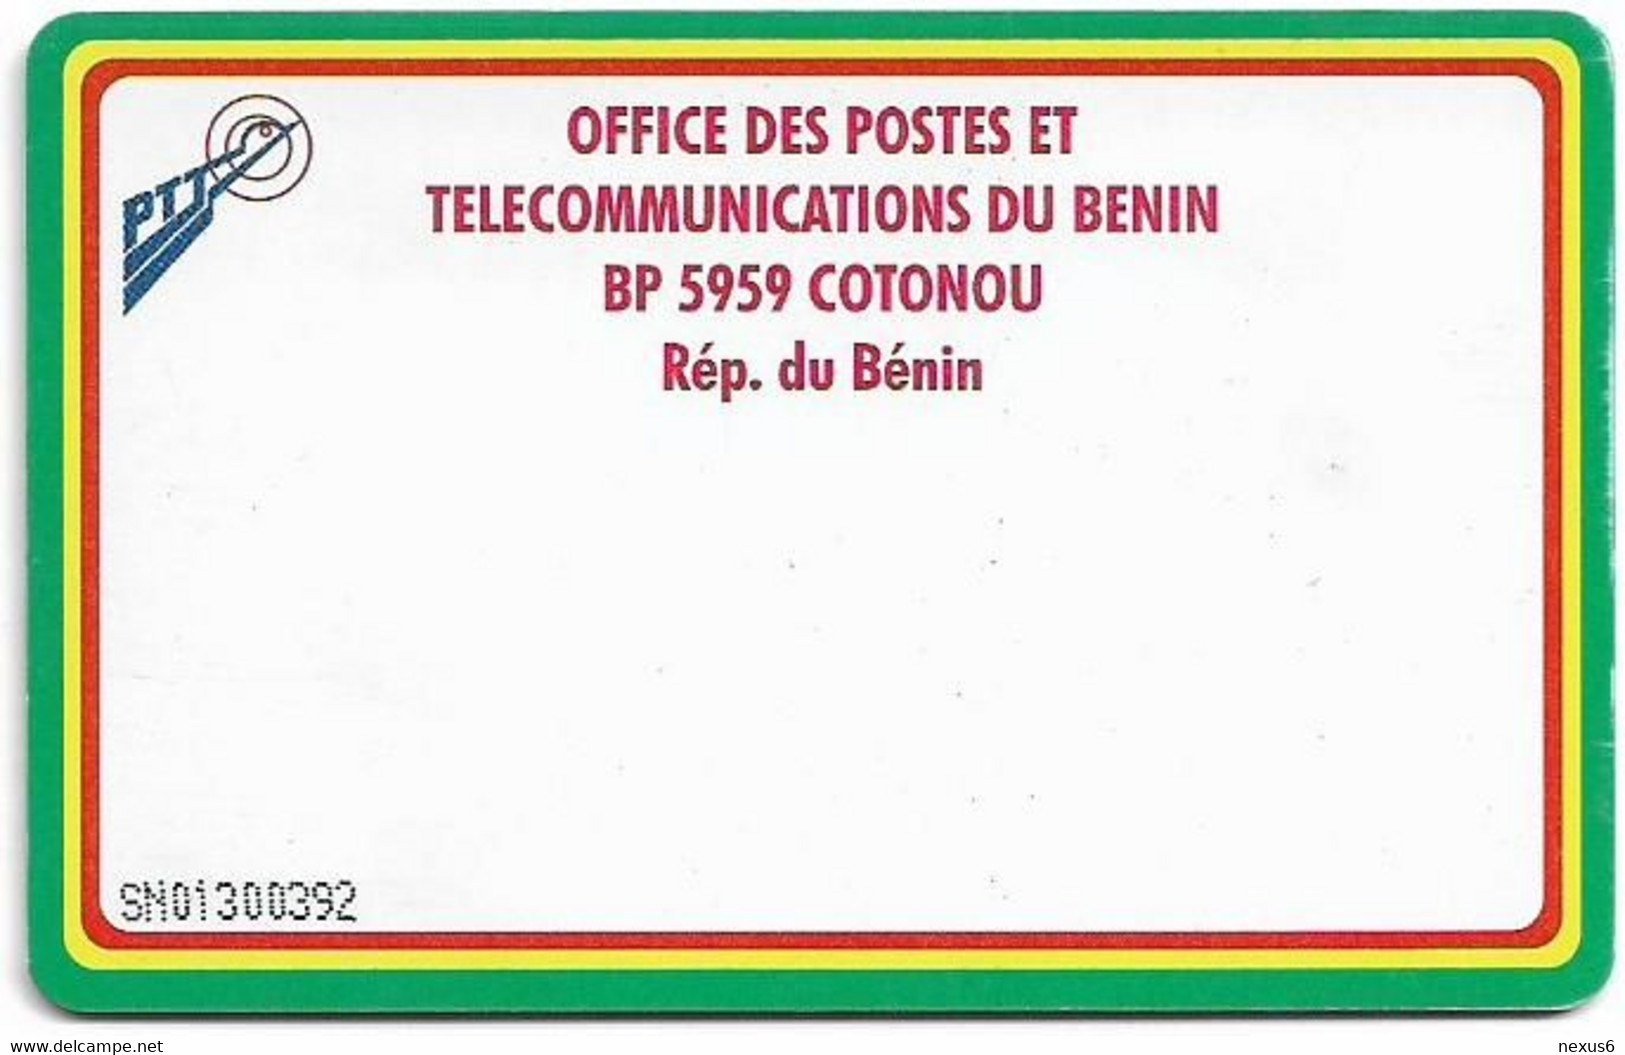 Benin - PTT (Chip) - CPM (Reverse White), Cn. At Center Bottom, Chip Thomson 4, 30Units, Used - Bénin